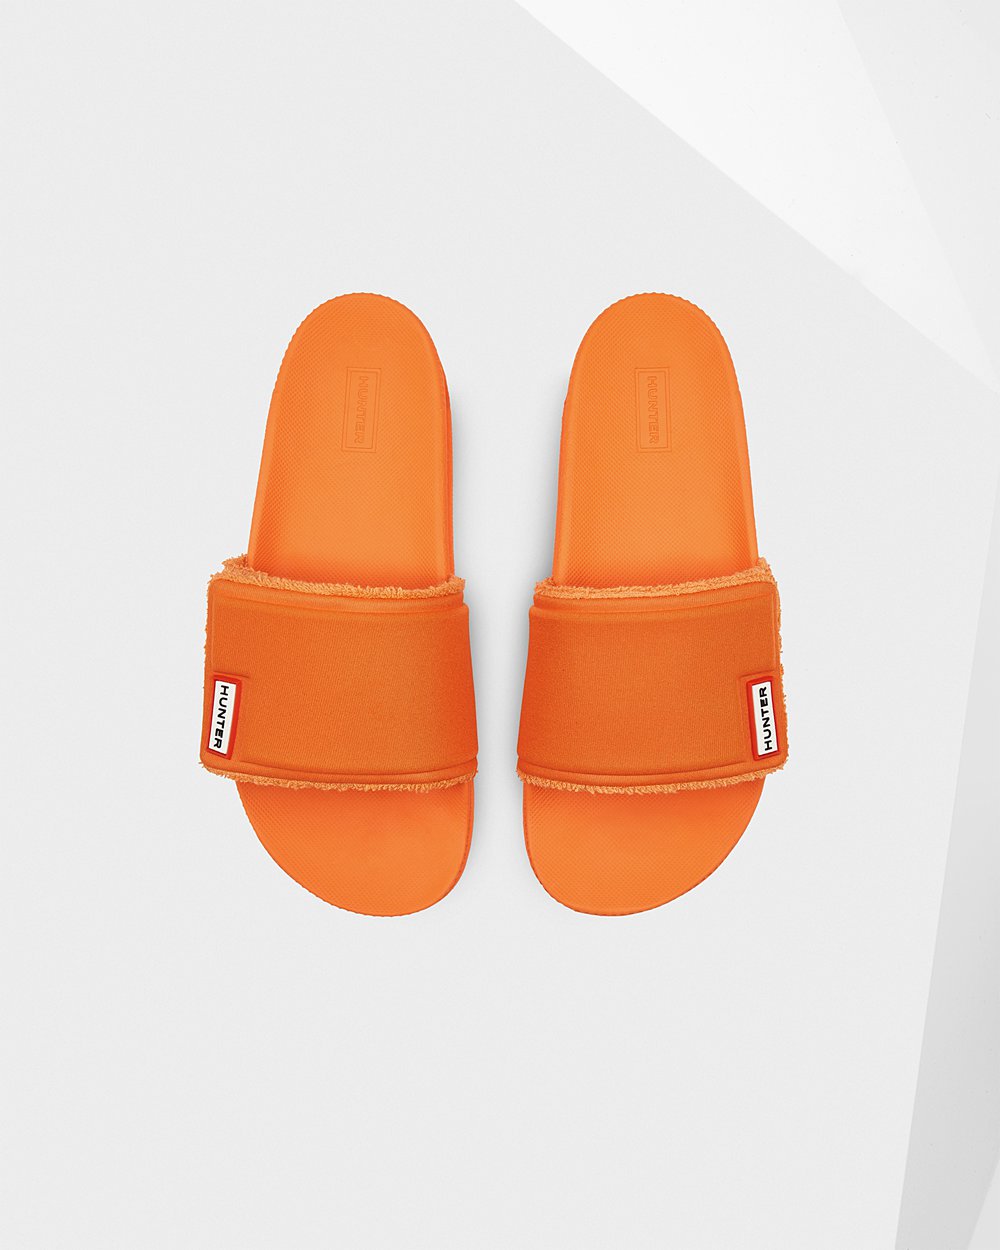 Womens Slides - Hunter Original Adjustable (76VBGASNL) - Orange